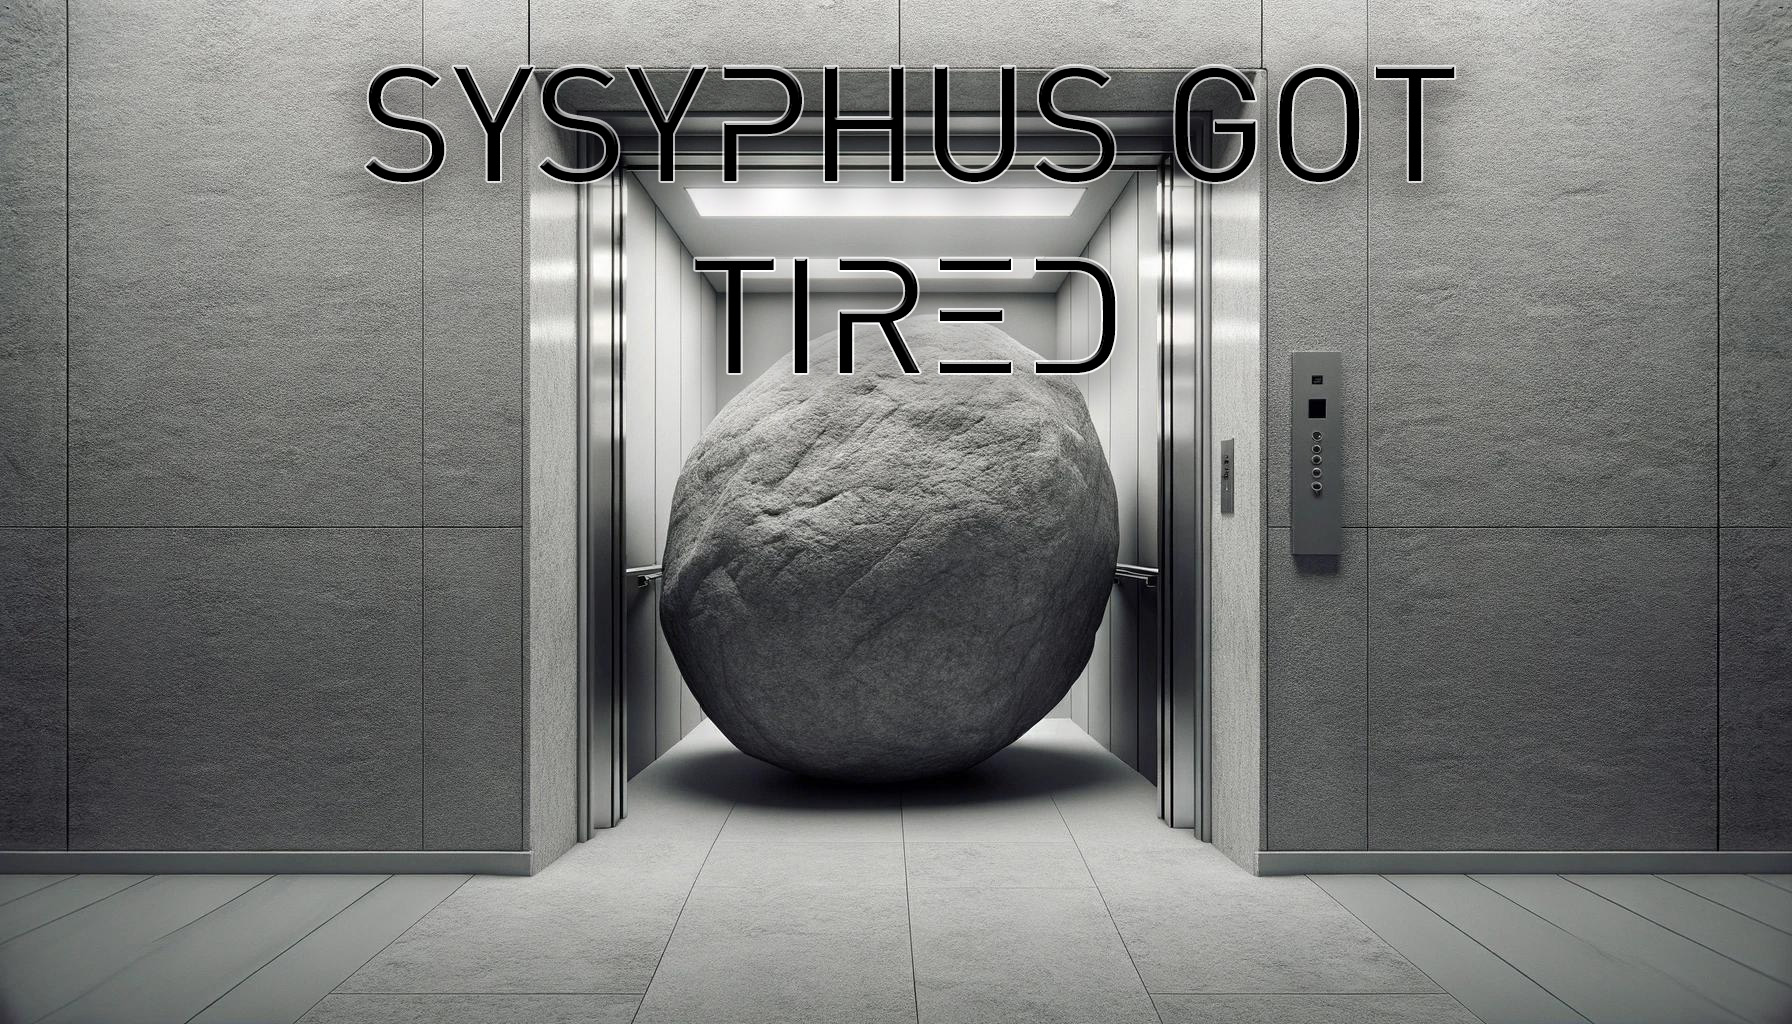 sisyphus got tired